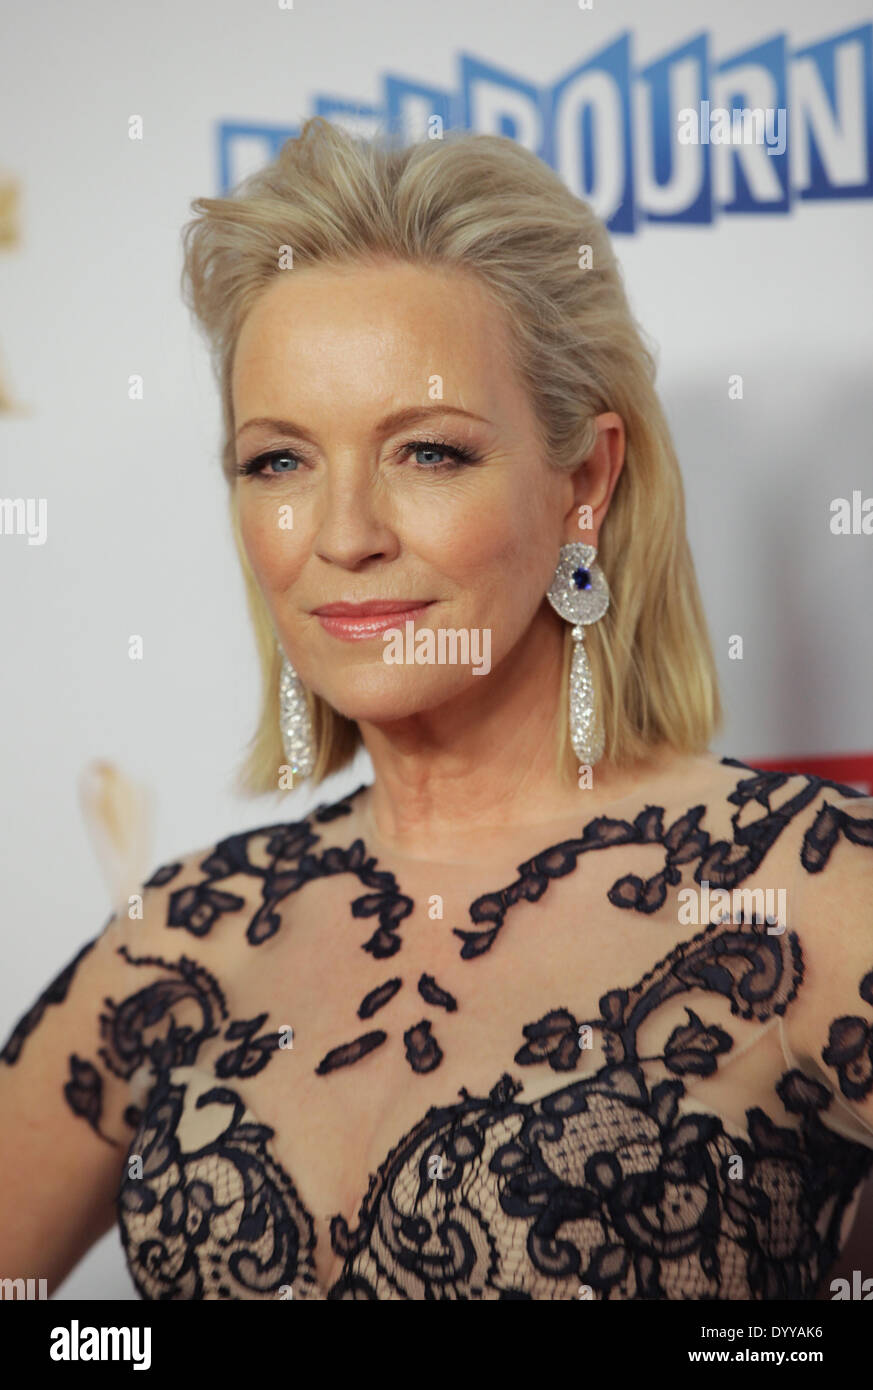 Rebecca Gibney presso il Logie Awards, Melbourne, 27 aprile 2014 Foto stock  - Alamy